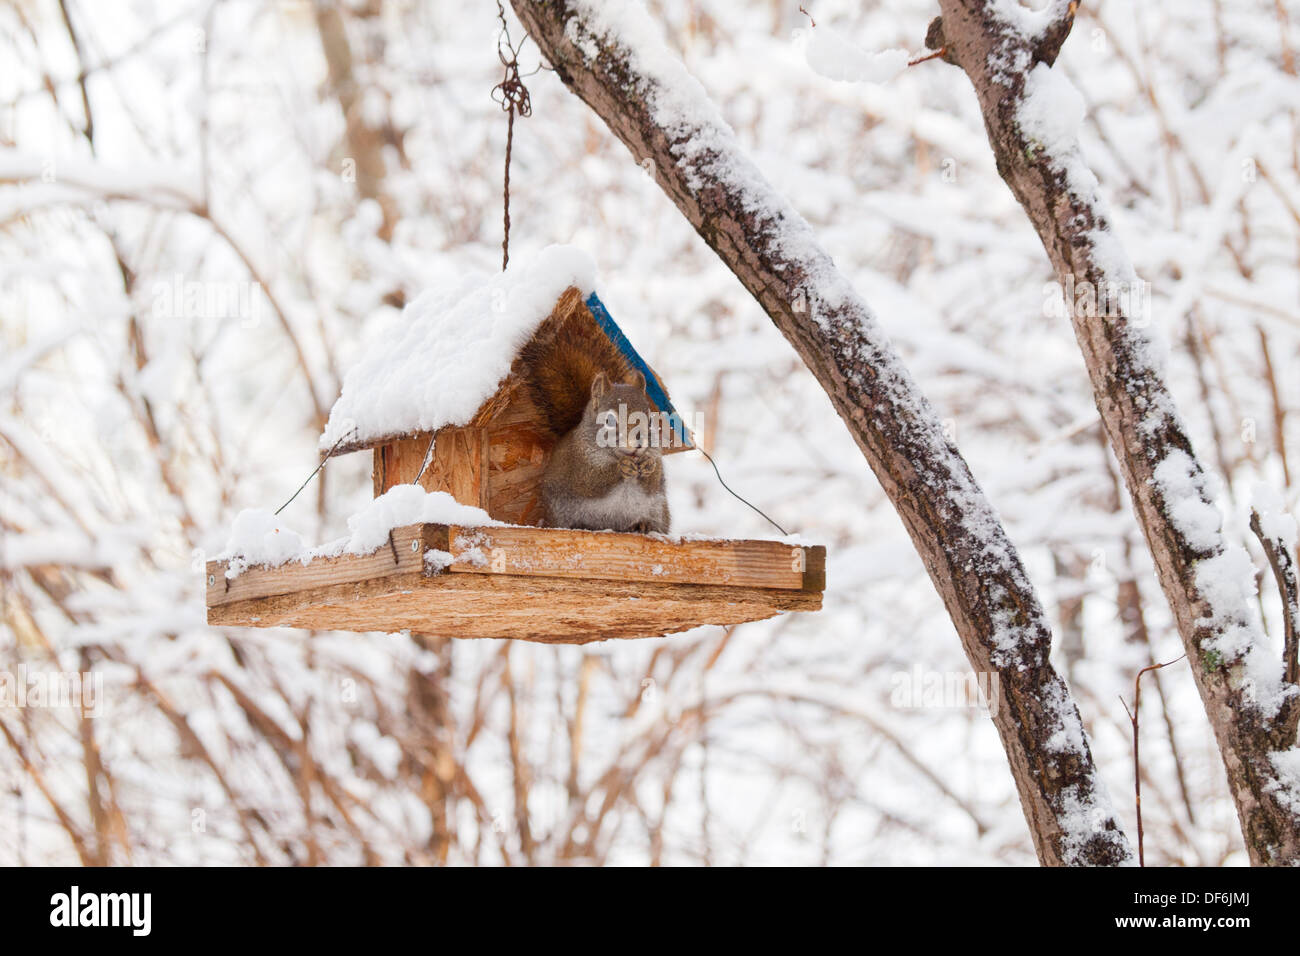 Un simpatico american scoiattolo rosso (Tamiasciurus hudsonicus) scorrerie di un uccello alimentatore per uno spuntino dopo una nevicata in inverno. Foto Stock